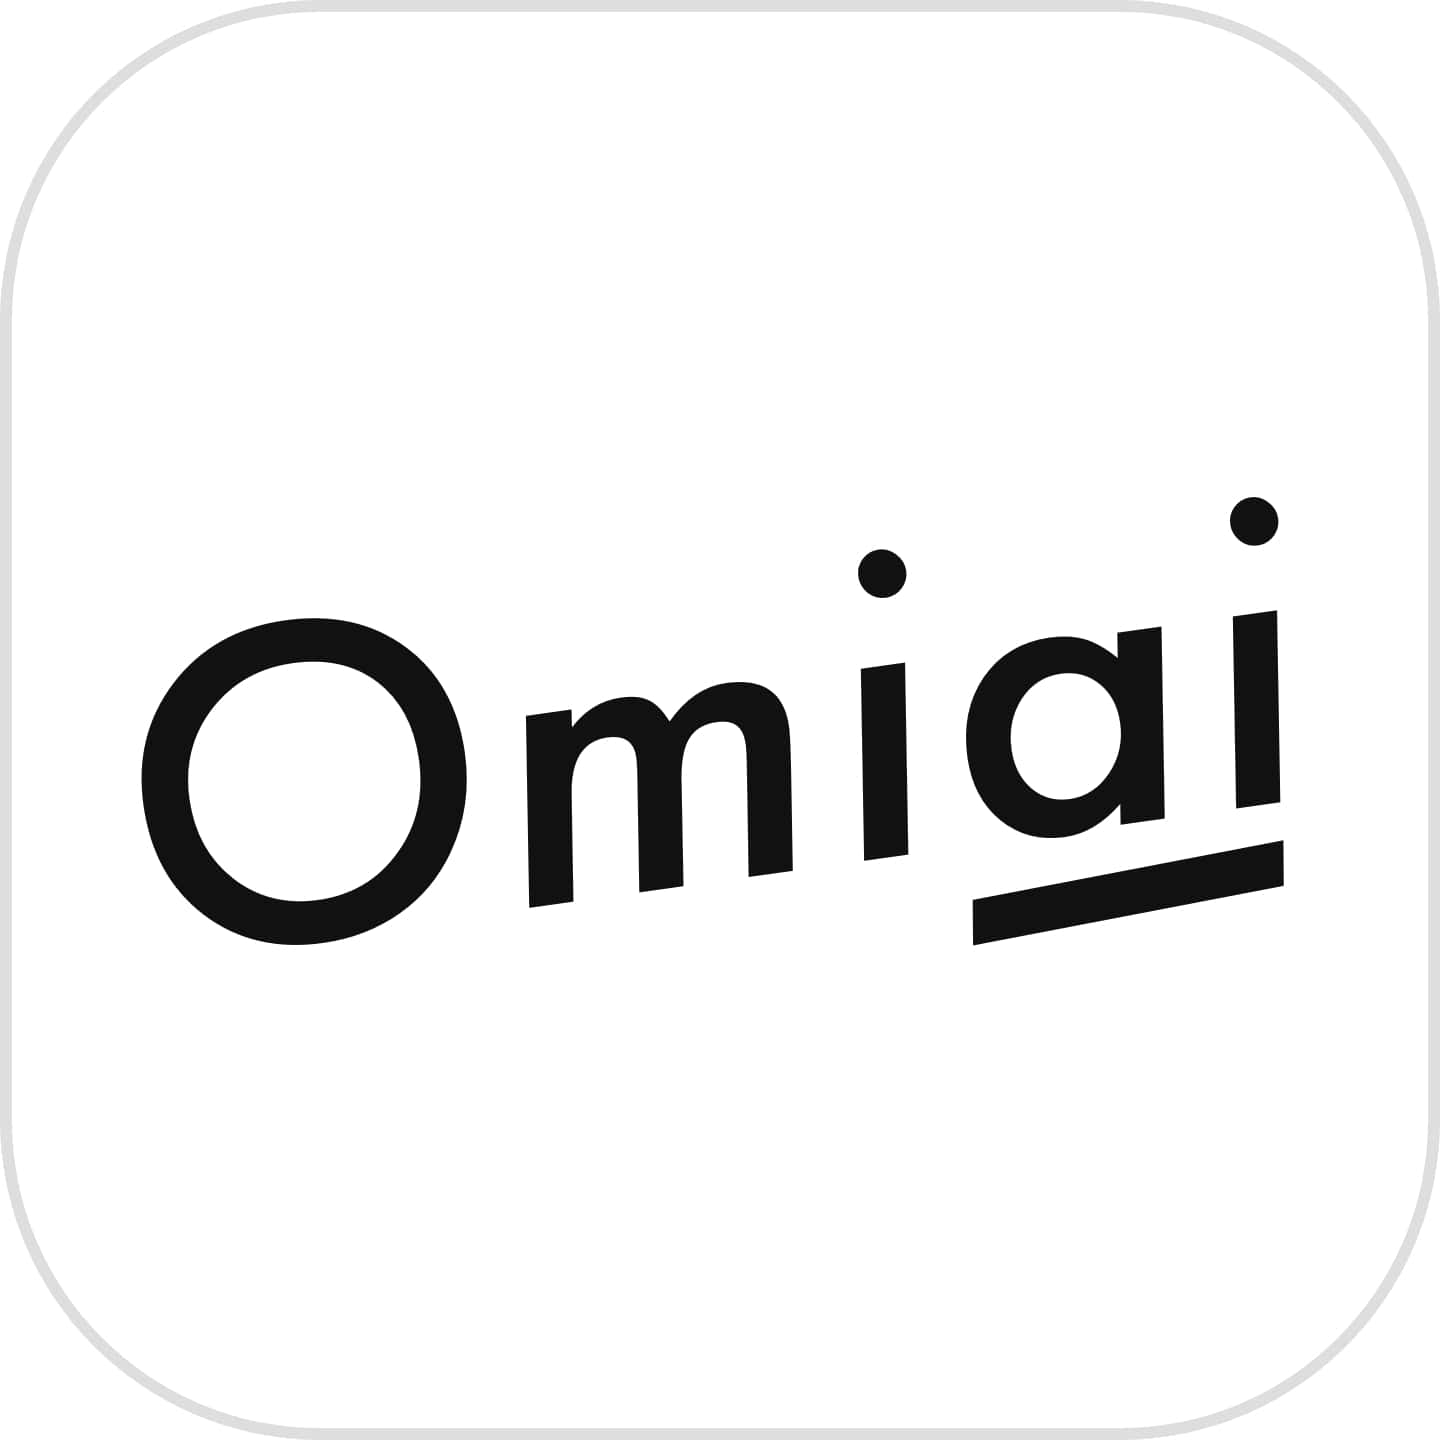 Omiai(オミアイ)のアイコンの画像